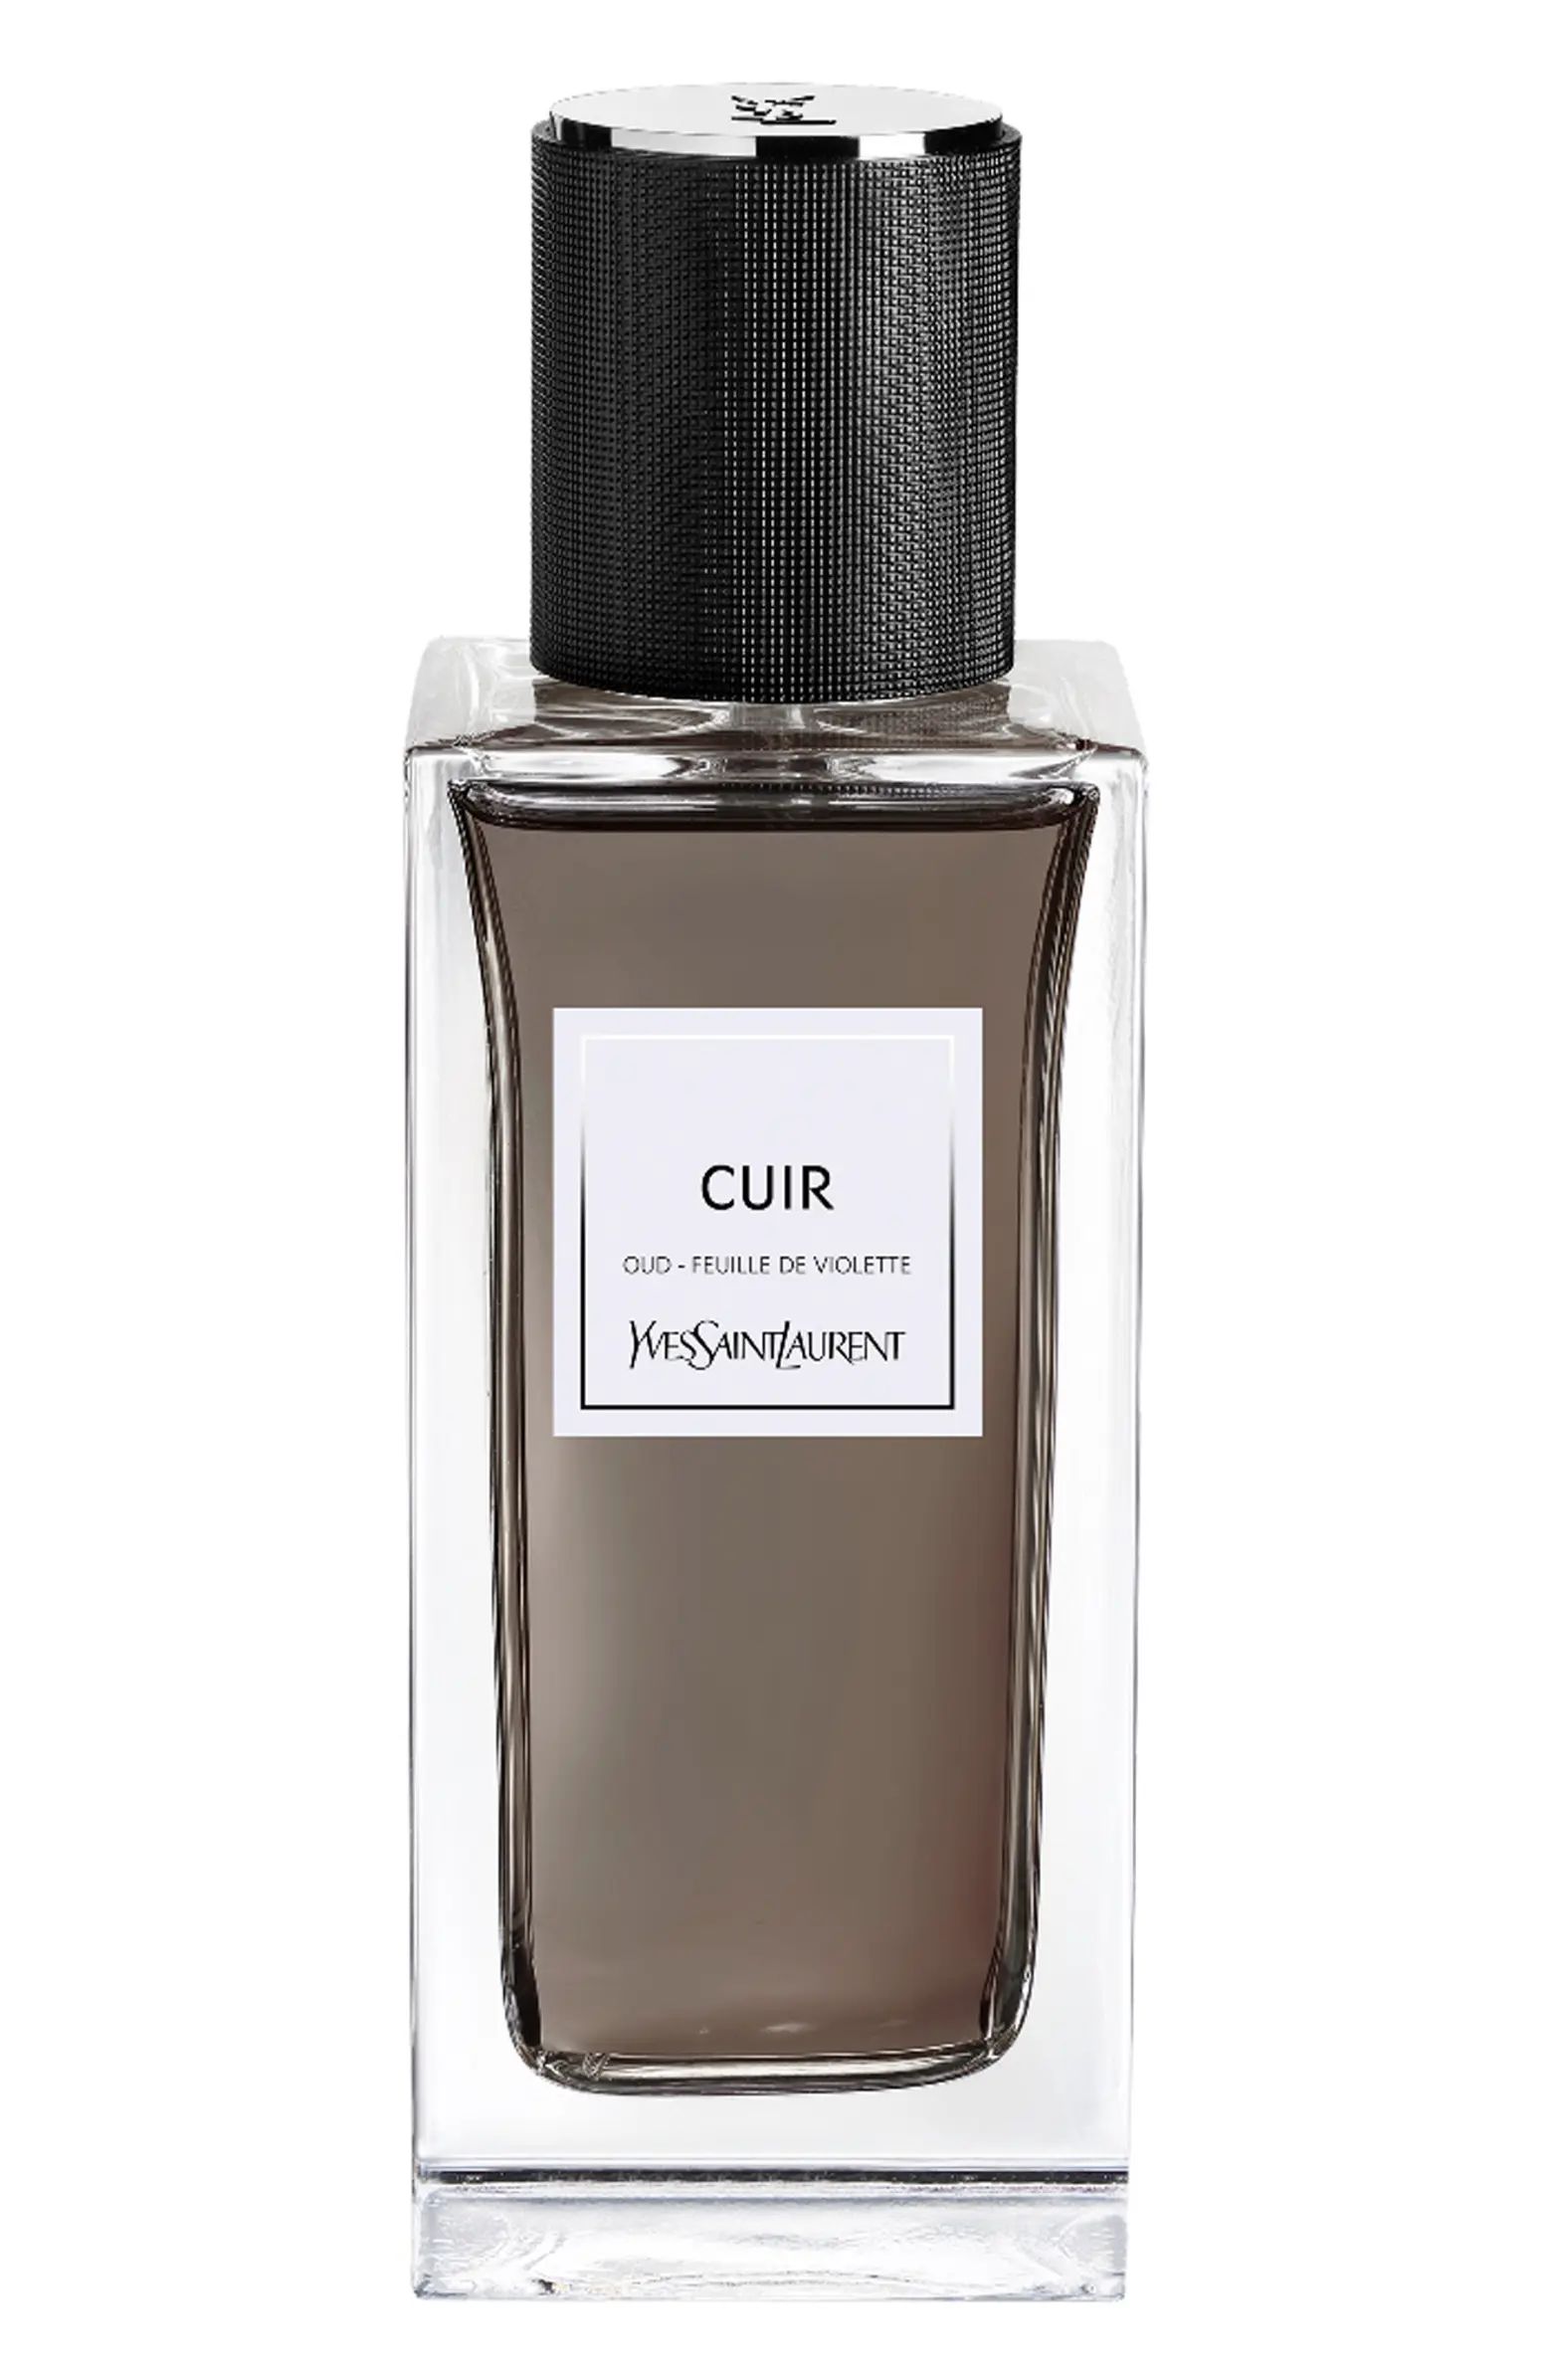 Cuir - Le Vestiaire des Parfums | Nordstrom